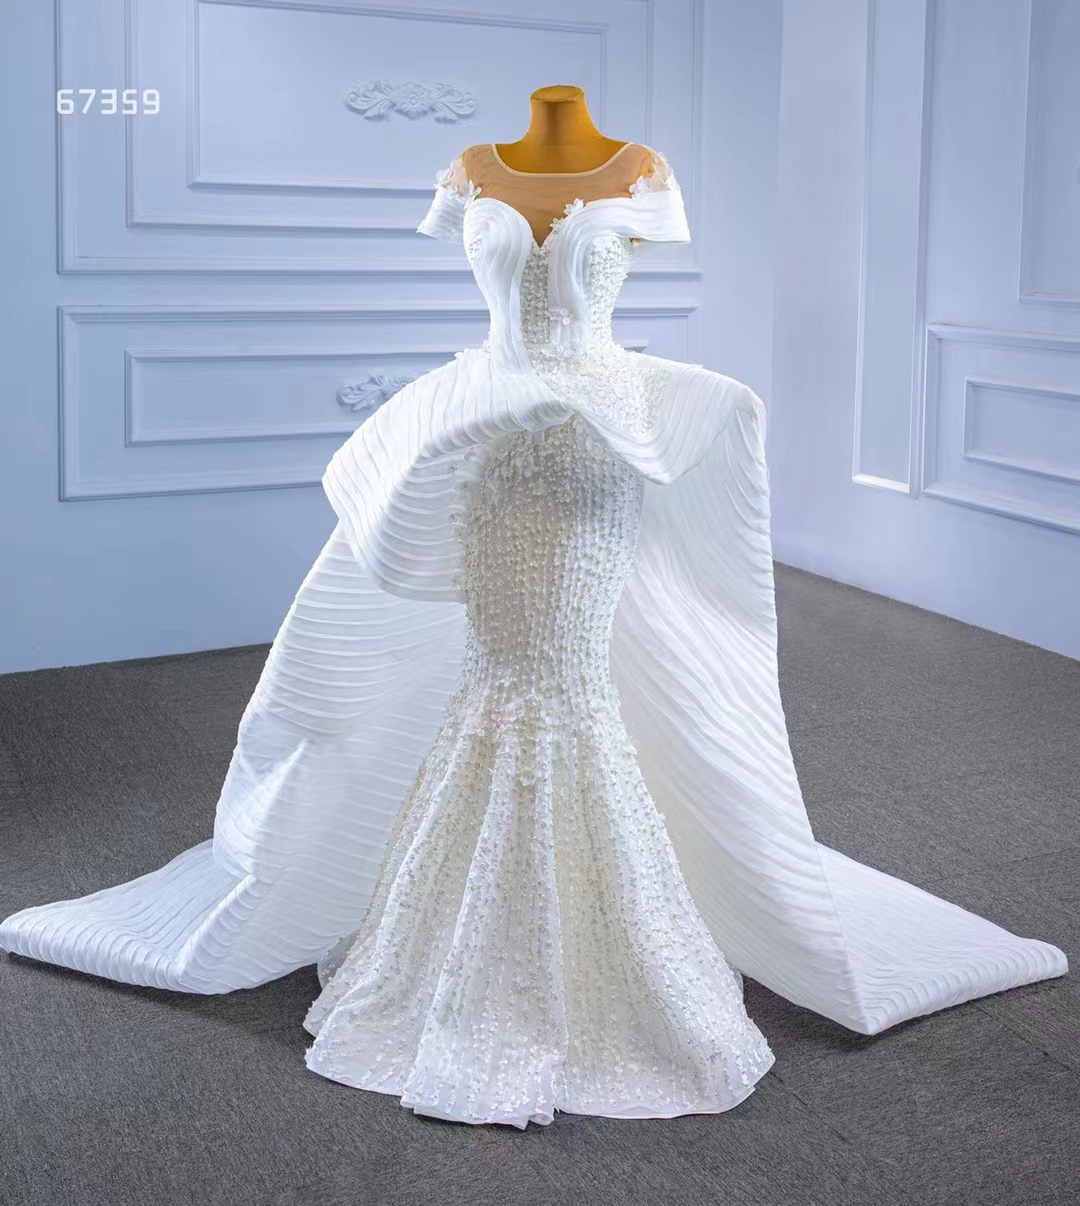 Свадебное платье в форме сердца, трендовый дизайн, роскошное белое кружево с бисером, SM67359